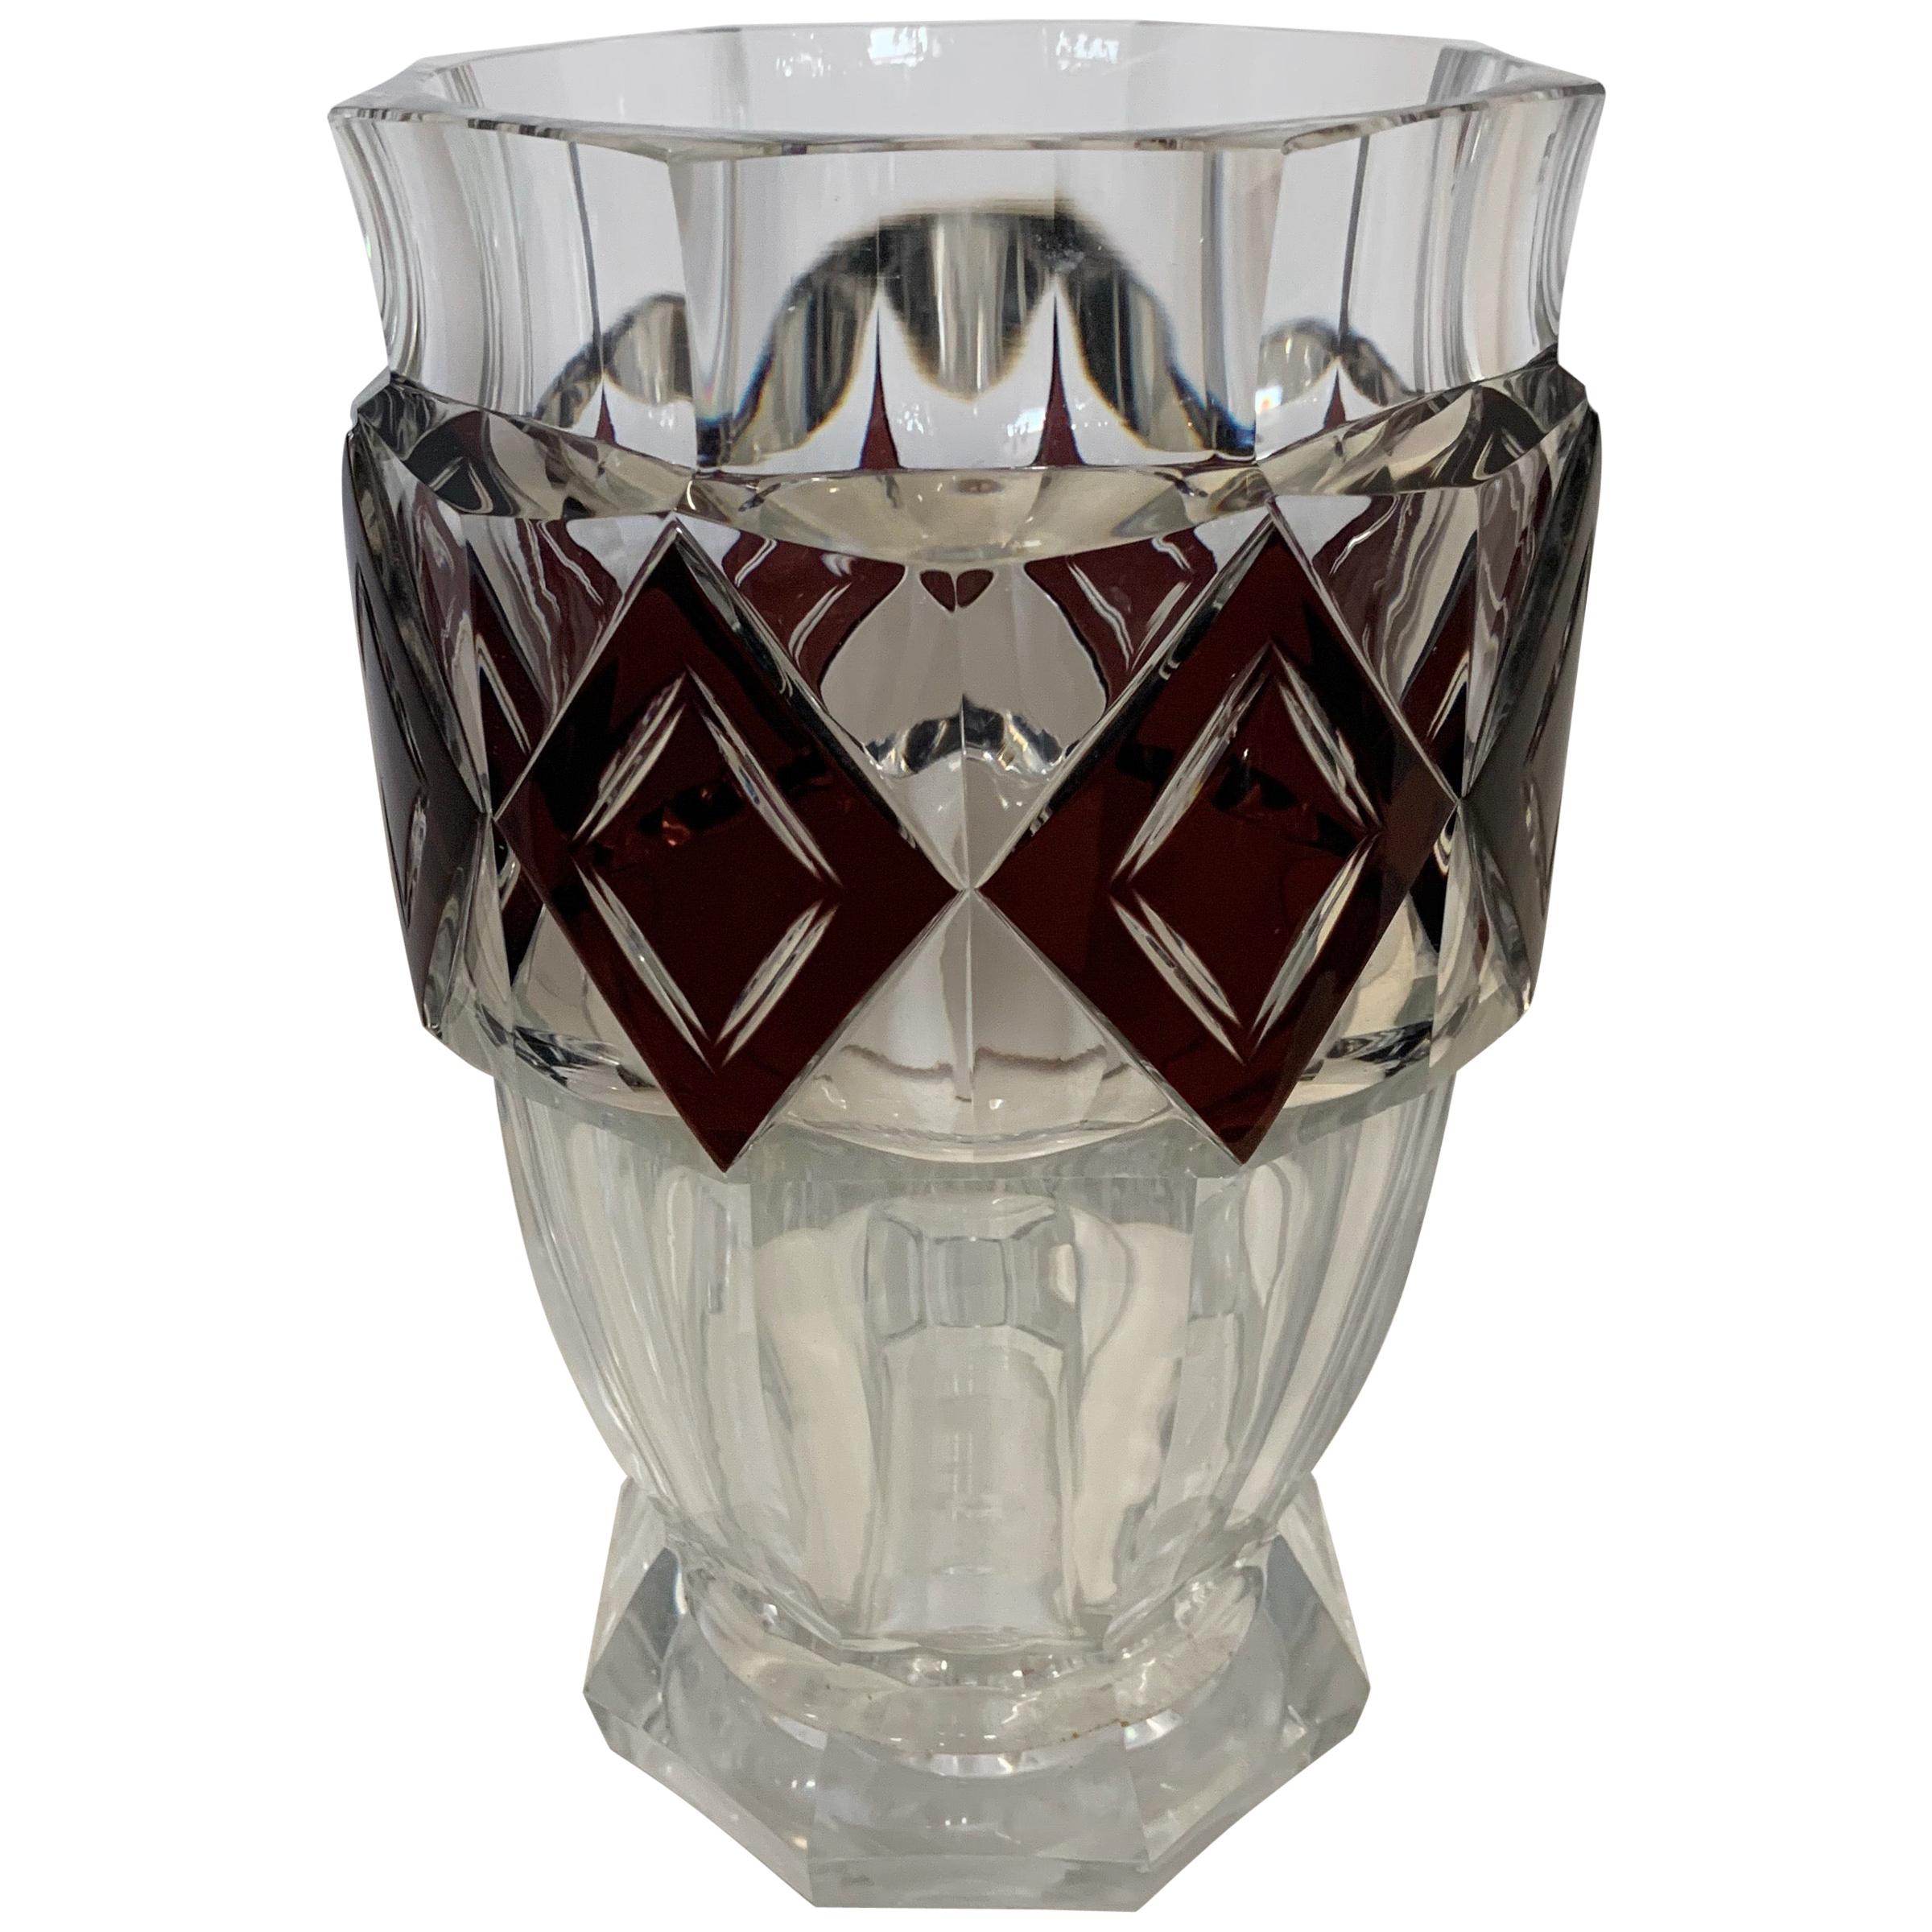 Wonderful Val Saint Lambert Amethyst Diamond Overlay Glass Crystal Kipling Vase